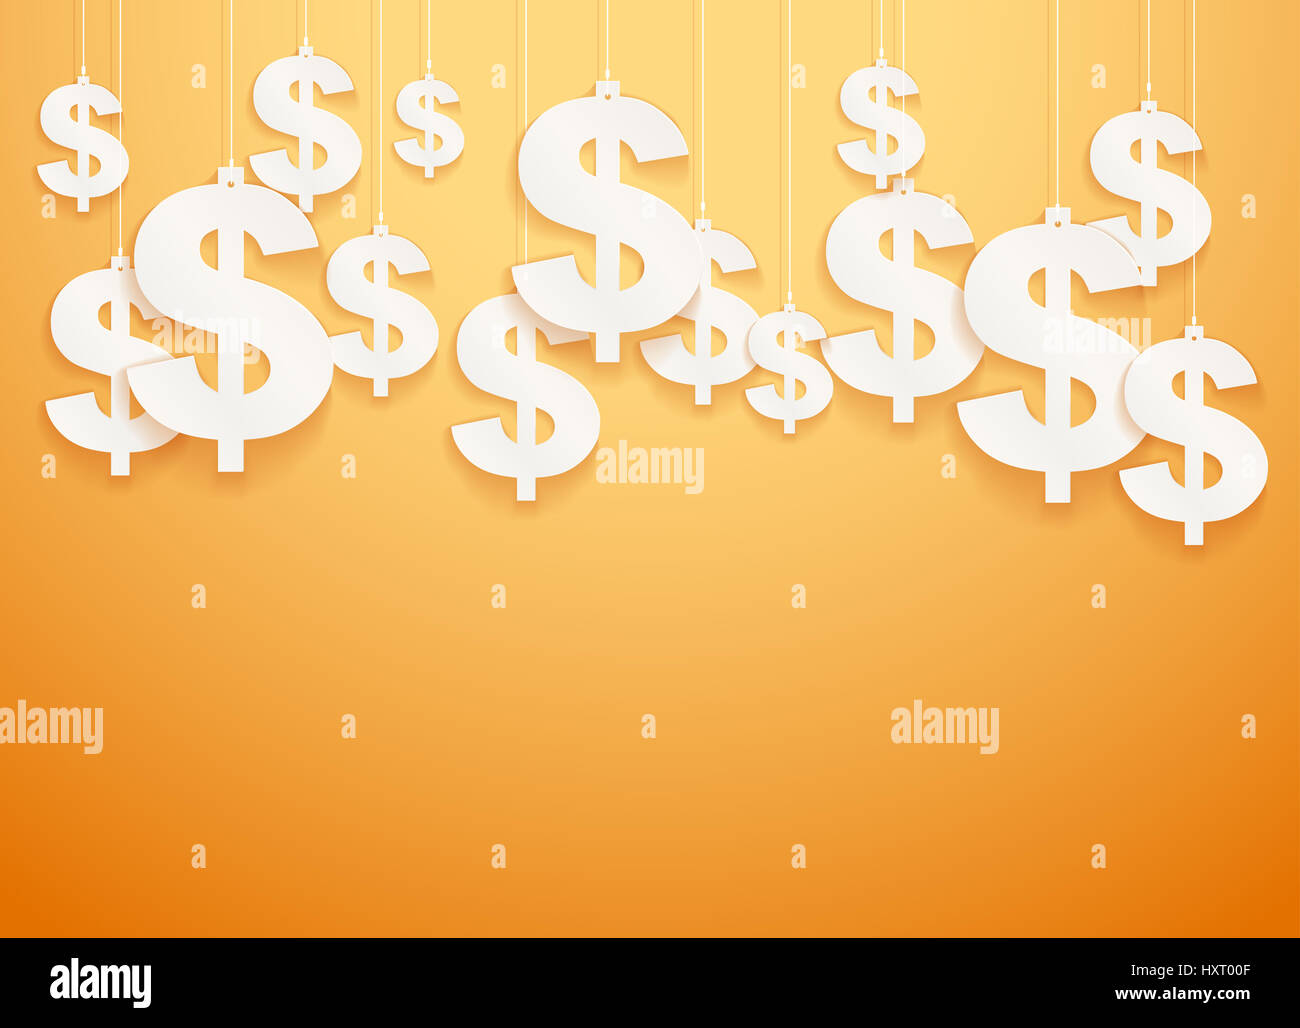 Hung symbols Dollar.  Illustration. Stock Photo